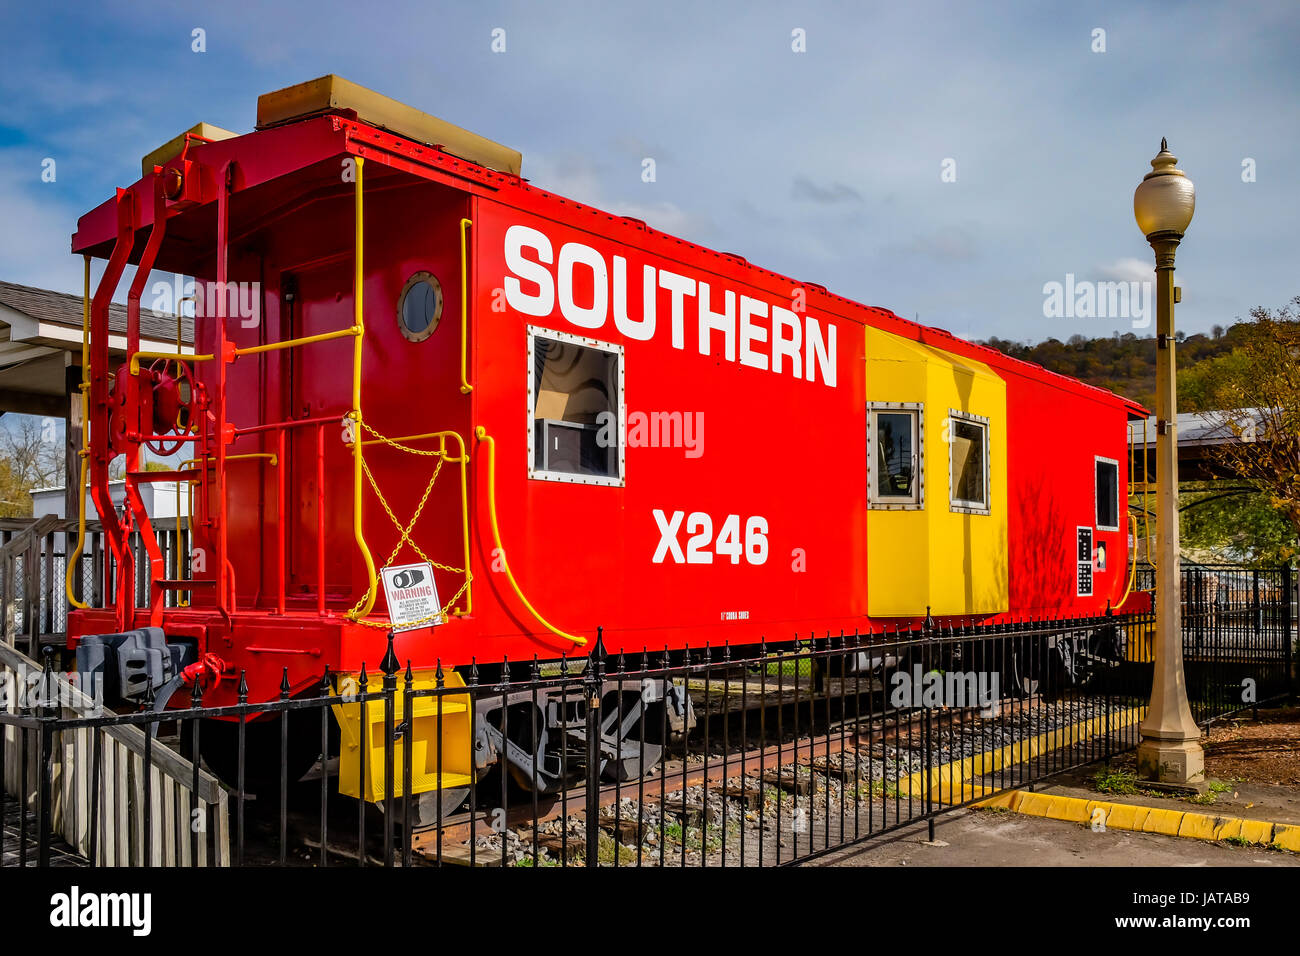 Southern Railroad Kombüse auf statische Anzeige am historischen Bahnhof Fort Payne, Alabama, wiederhergestellt. Stockfoto